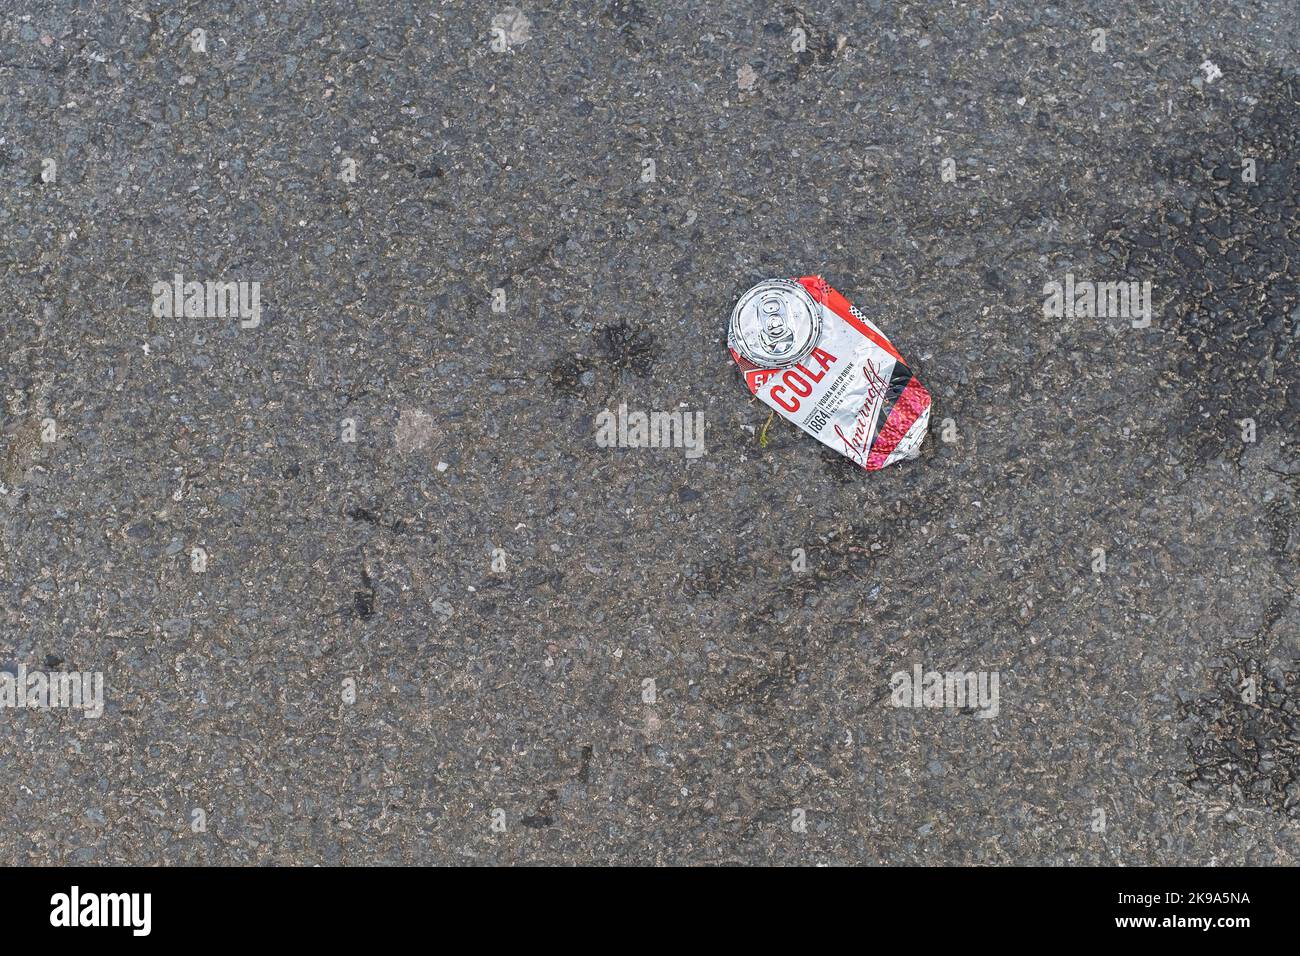 Eine abgeflachte Cola- und Vodka-Dose von Smirnoff auf einer Straße in Cornwall im Vereinigten Königreich. Stockfoto